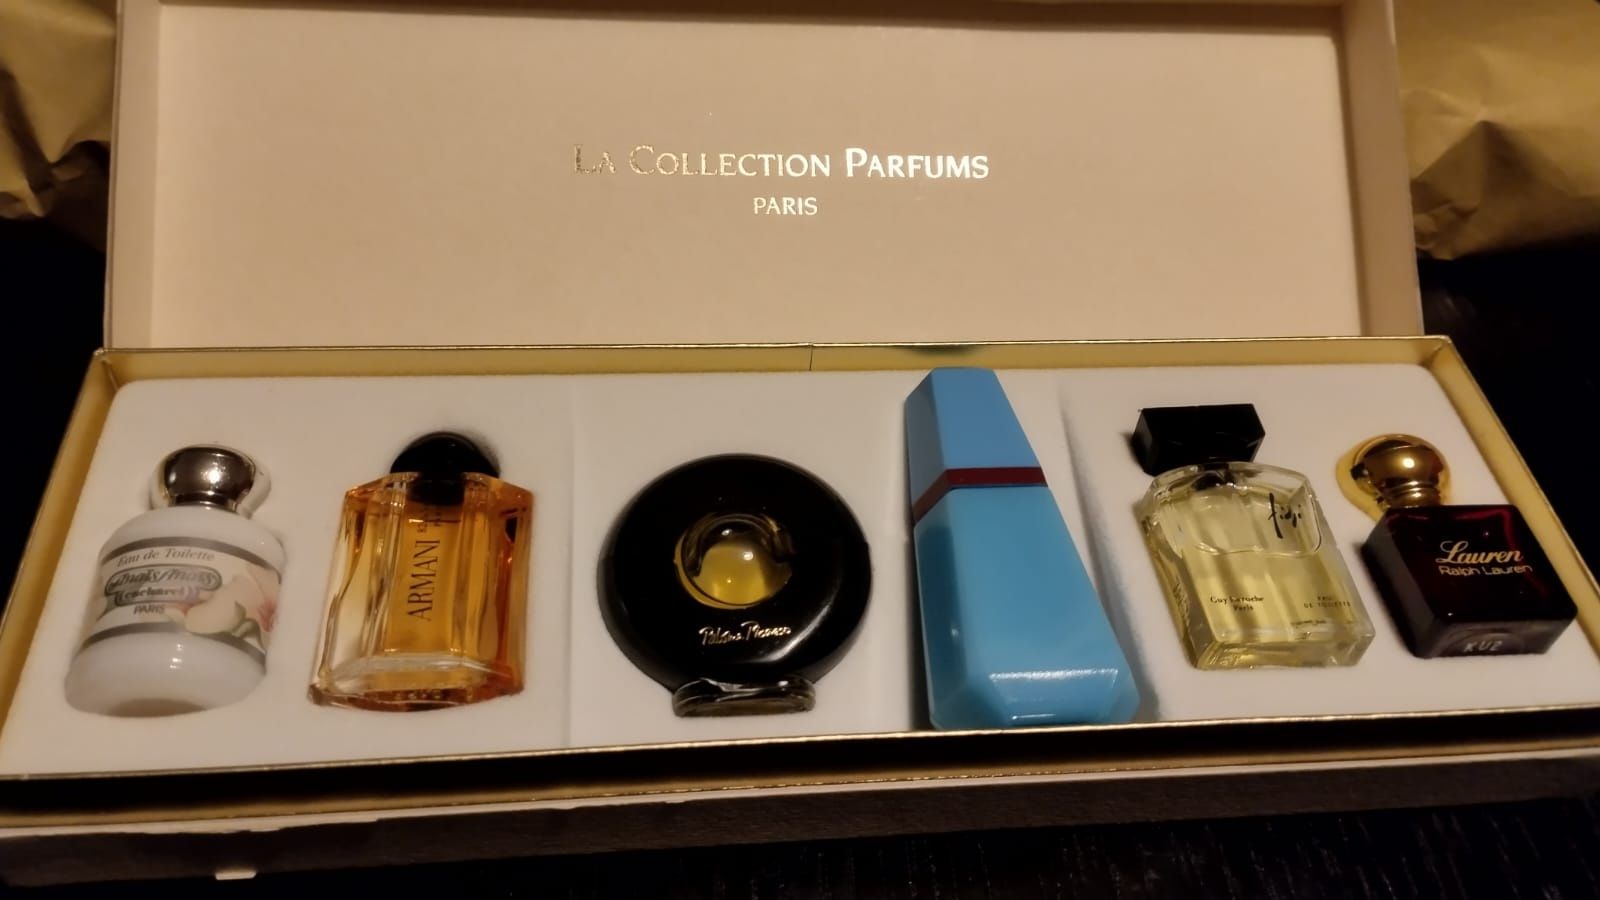 Coffret com seis perfumes miniatura originais 
Armani
Cacharel - 2
Pal